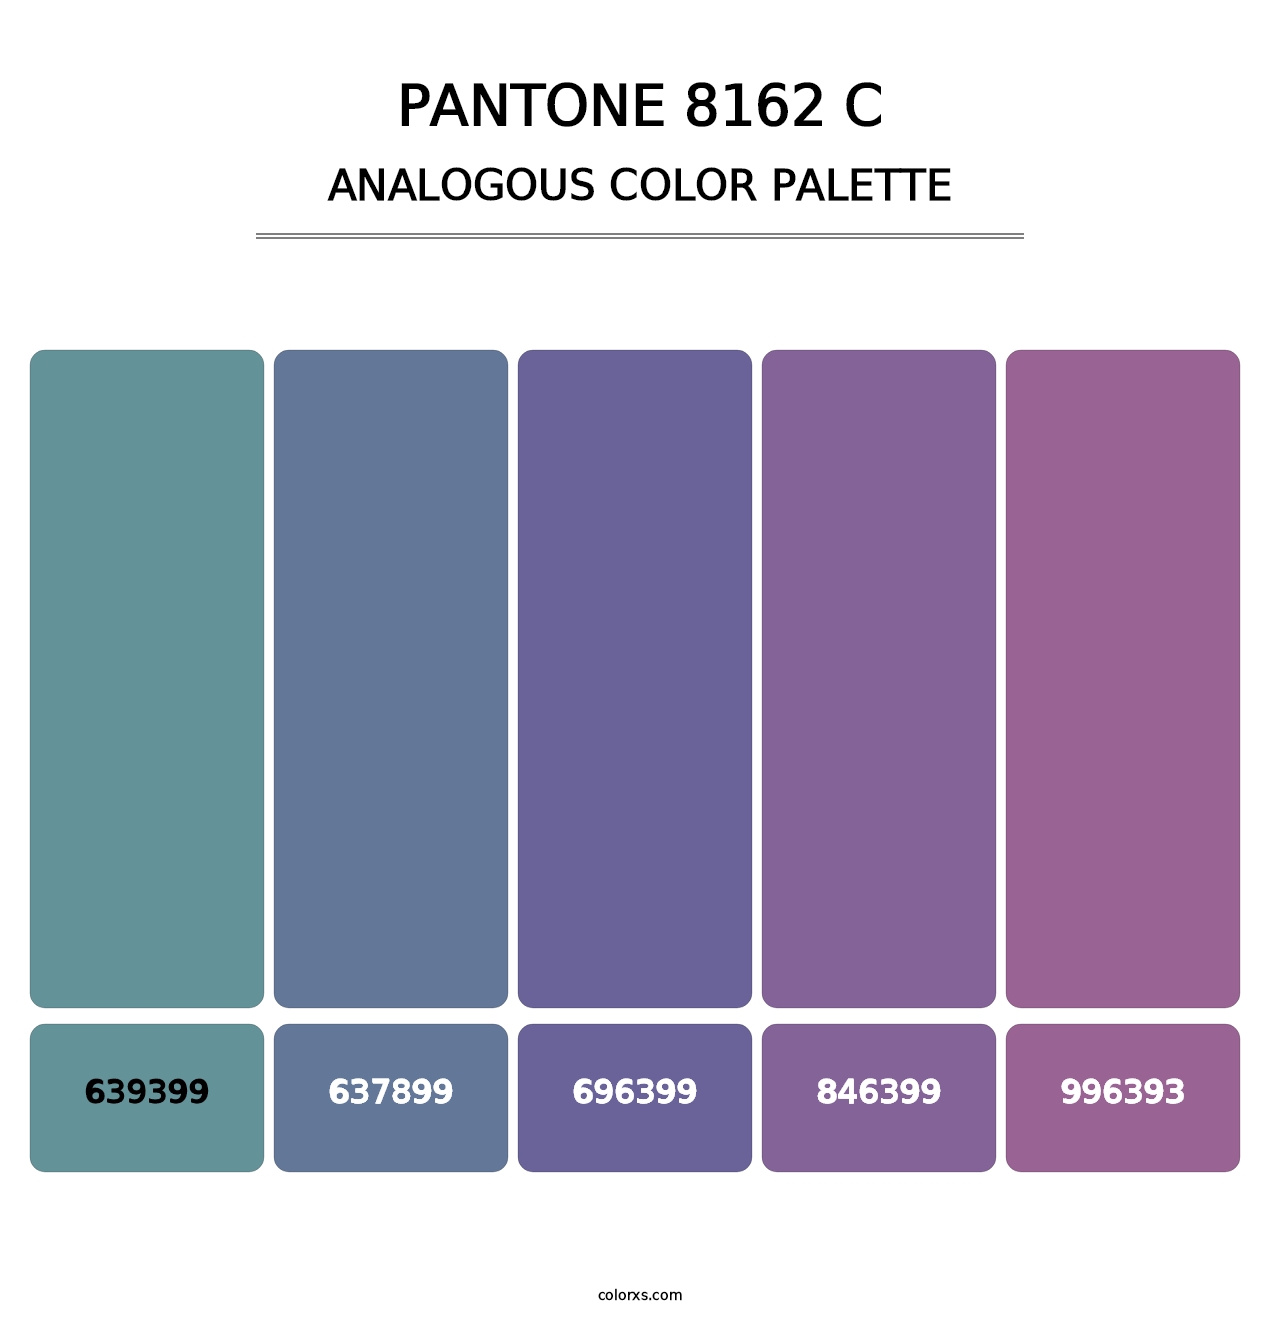 PANTONE 8162 C - Analogous Color Palette